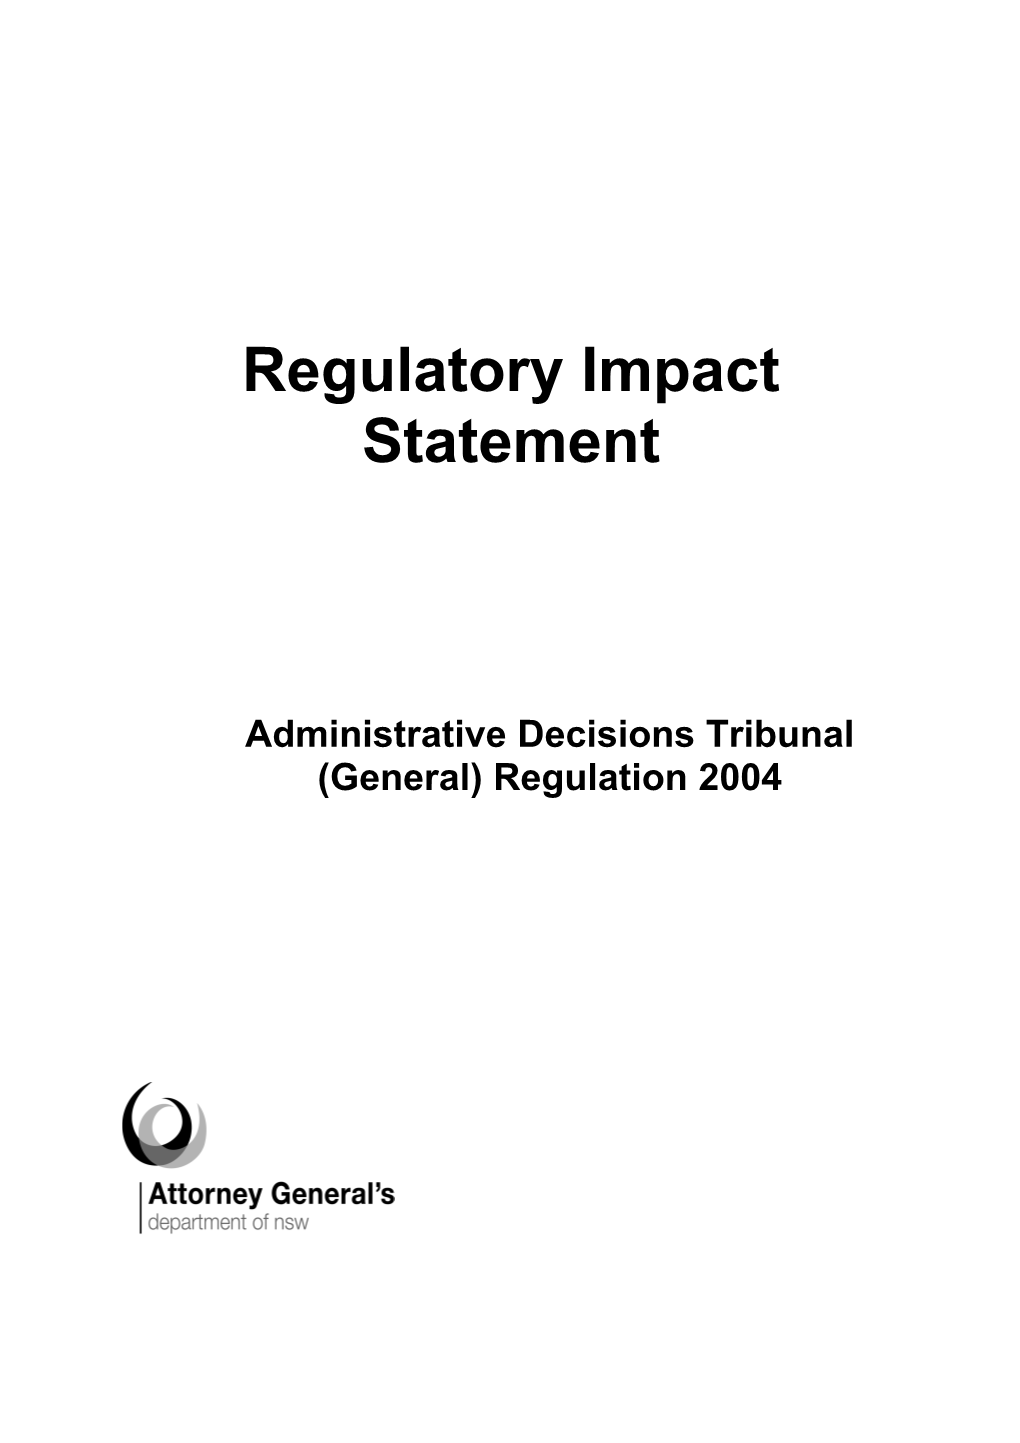 Regulatory Impact Statement s2